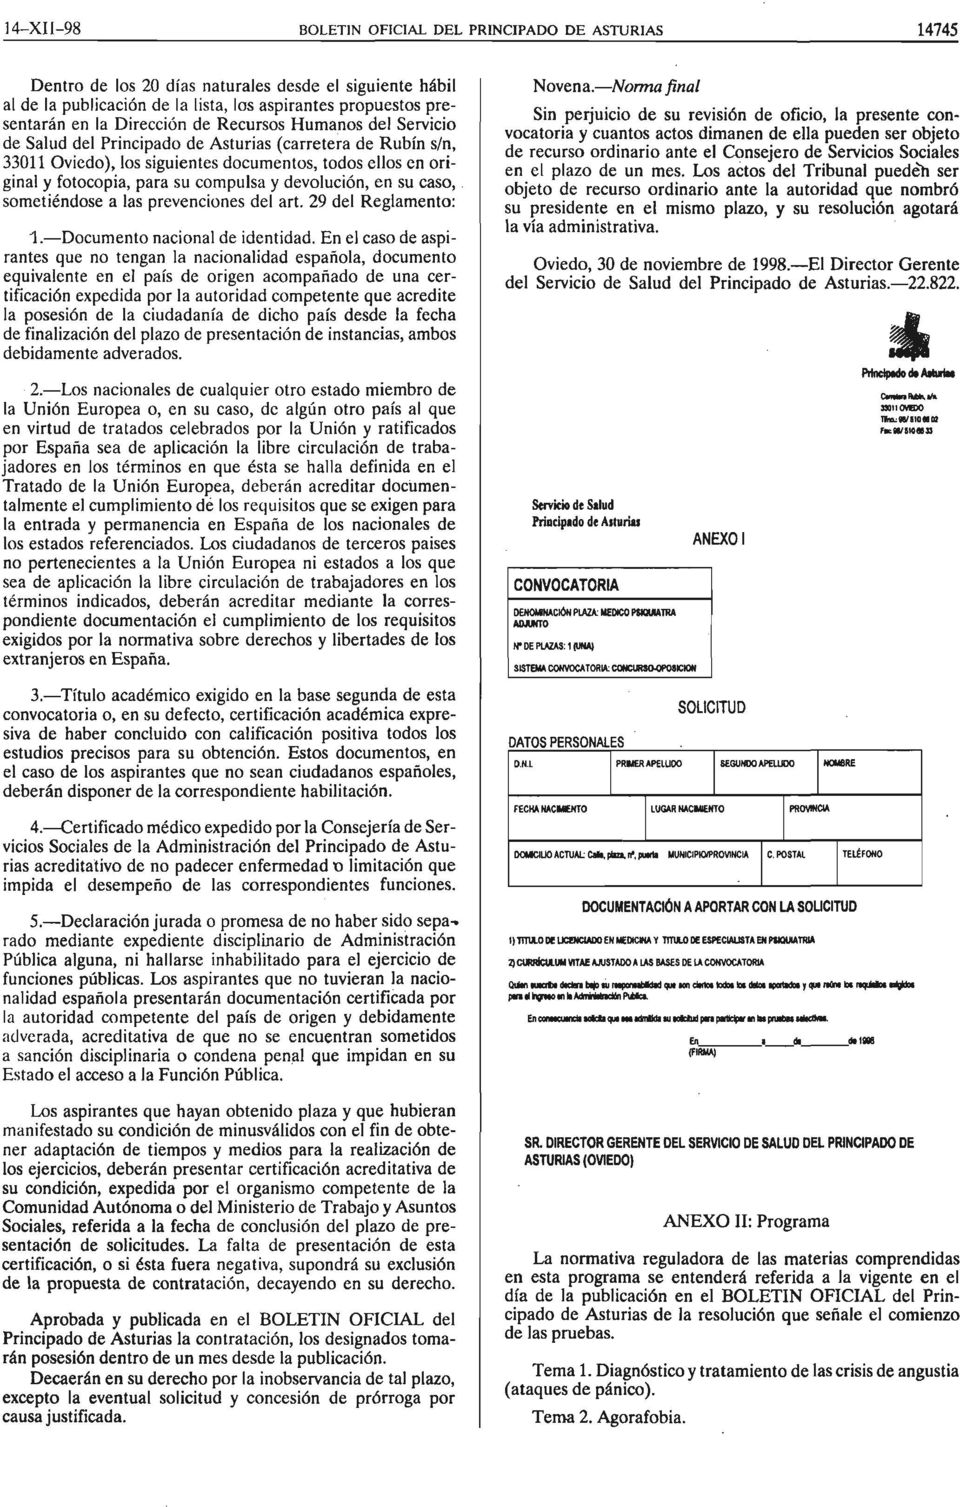 la Direccion de Recursos Humanos del Servicio de Salud del Principado de Asturias (carretera de Rubin sin, 33011 Oviedo), los siguientes documentos, todos ellos en original y fotocopia, para su